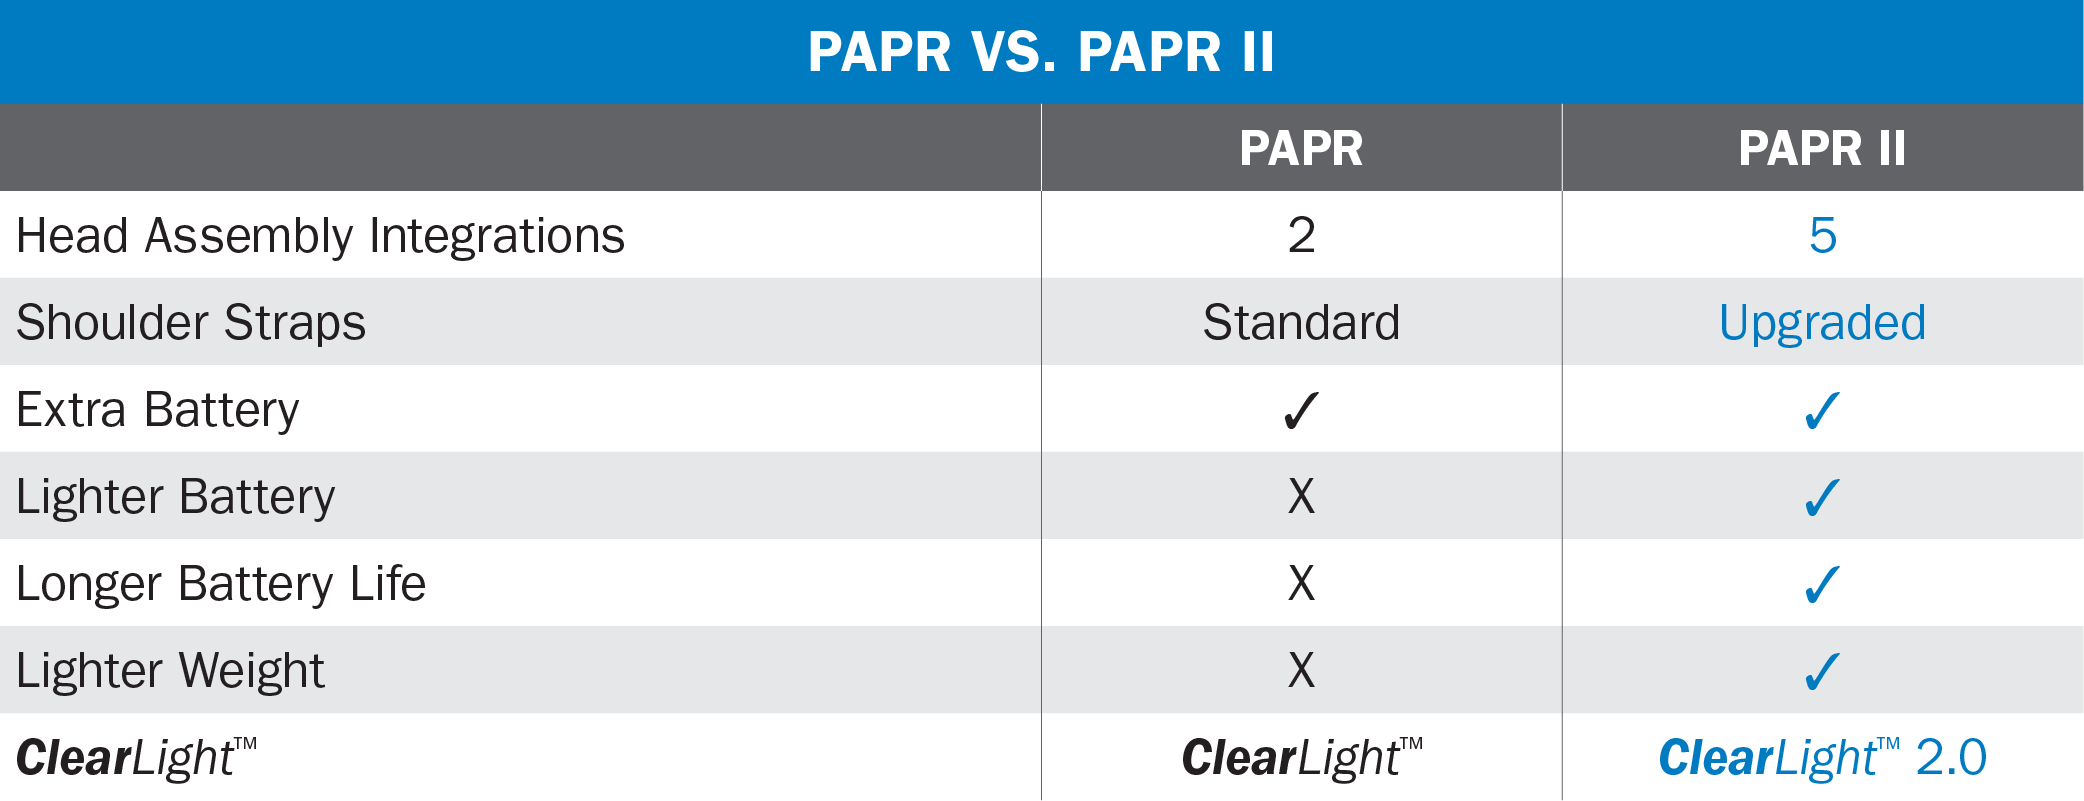 PAPR vs. PAPRII Table